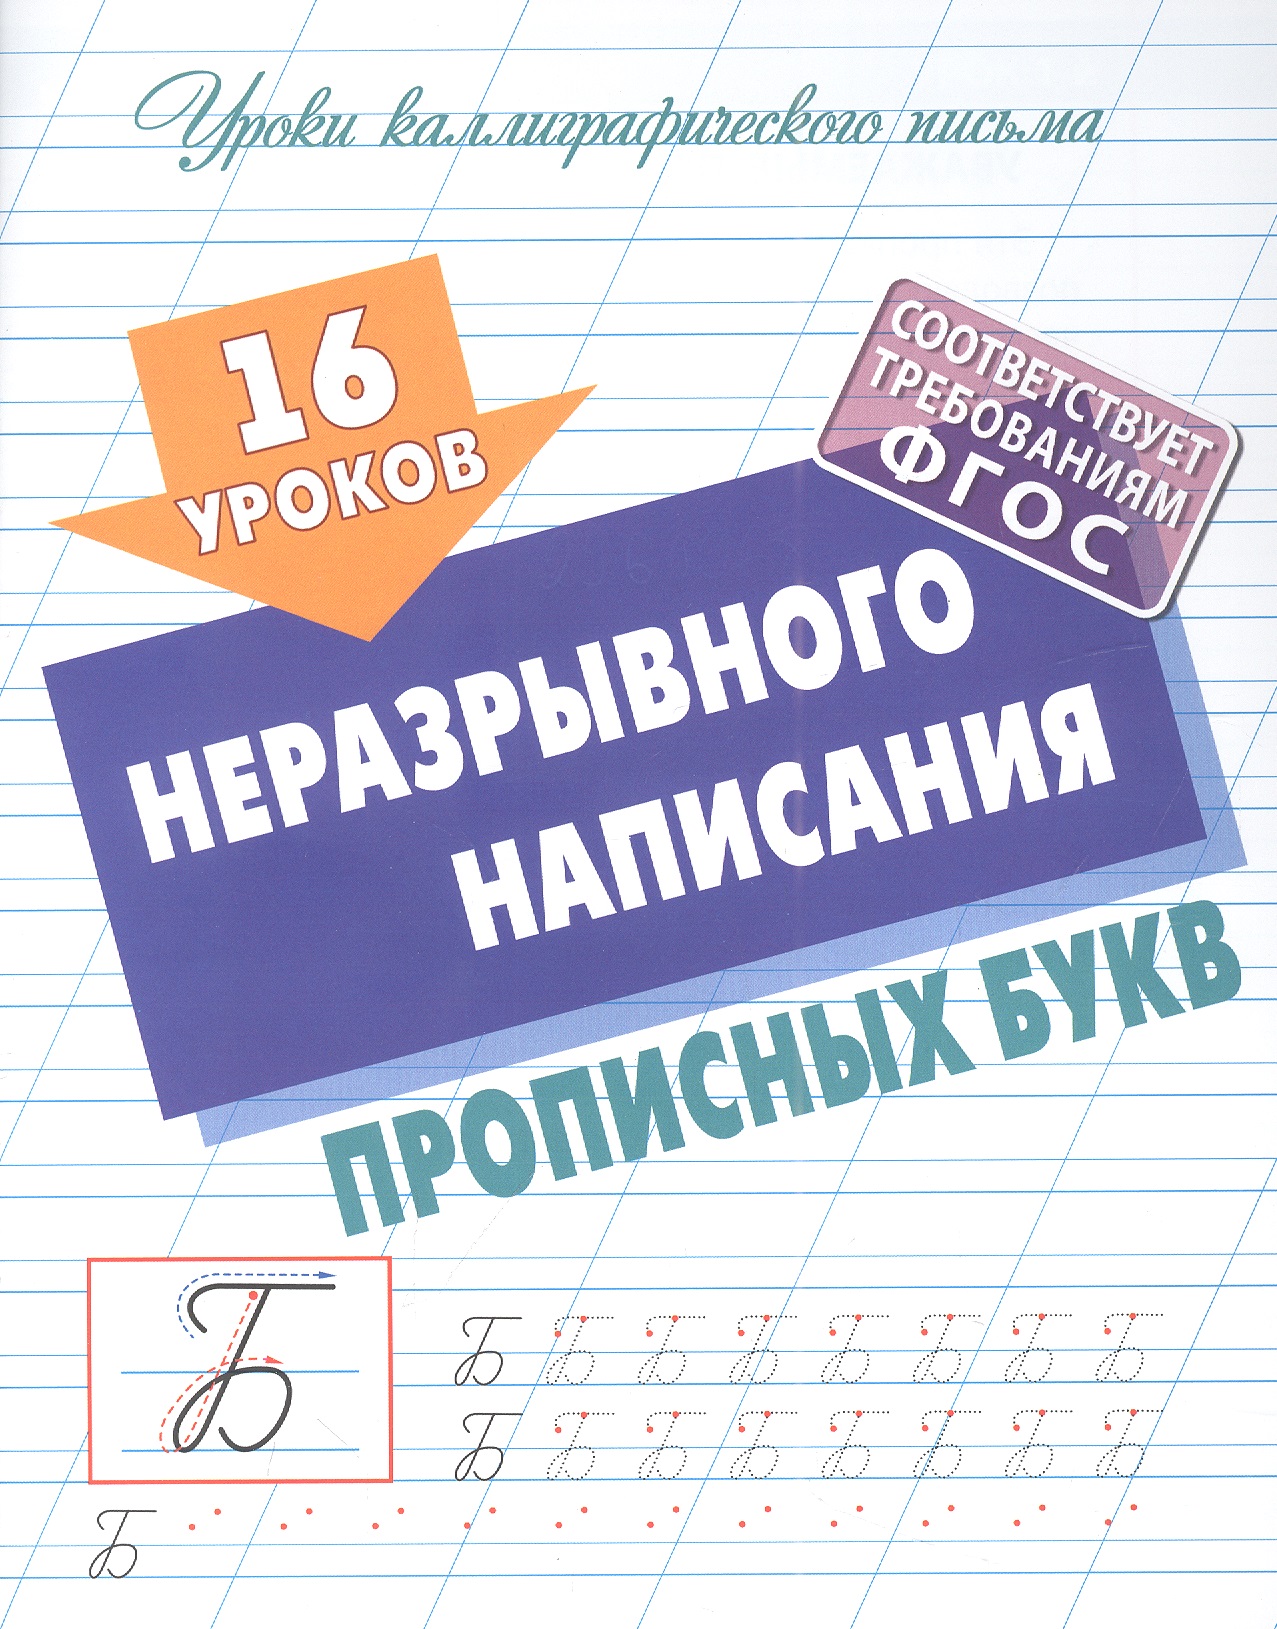 Петренко Станислав Викторович - 16 уроков неразрывного написания прописных букв